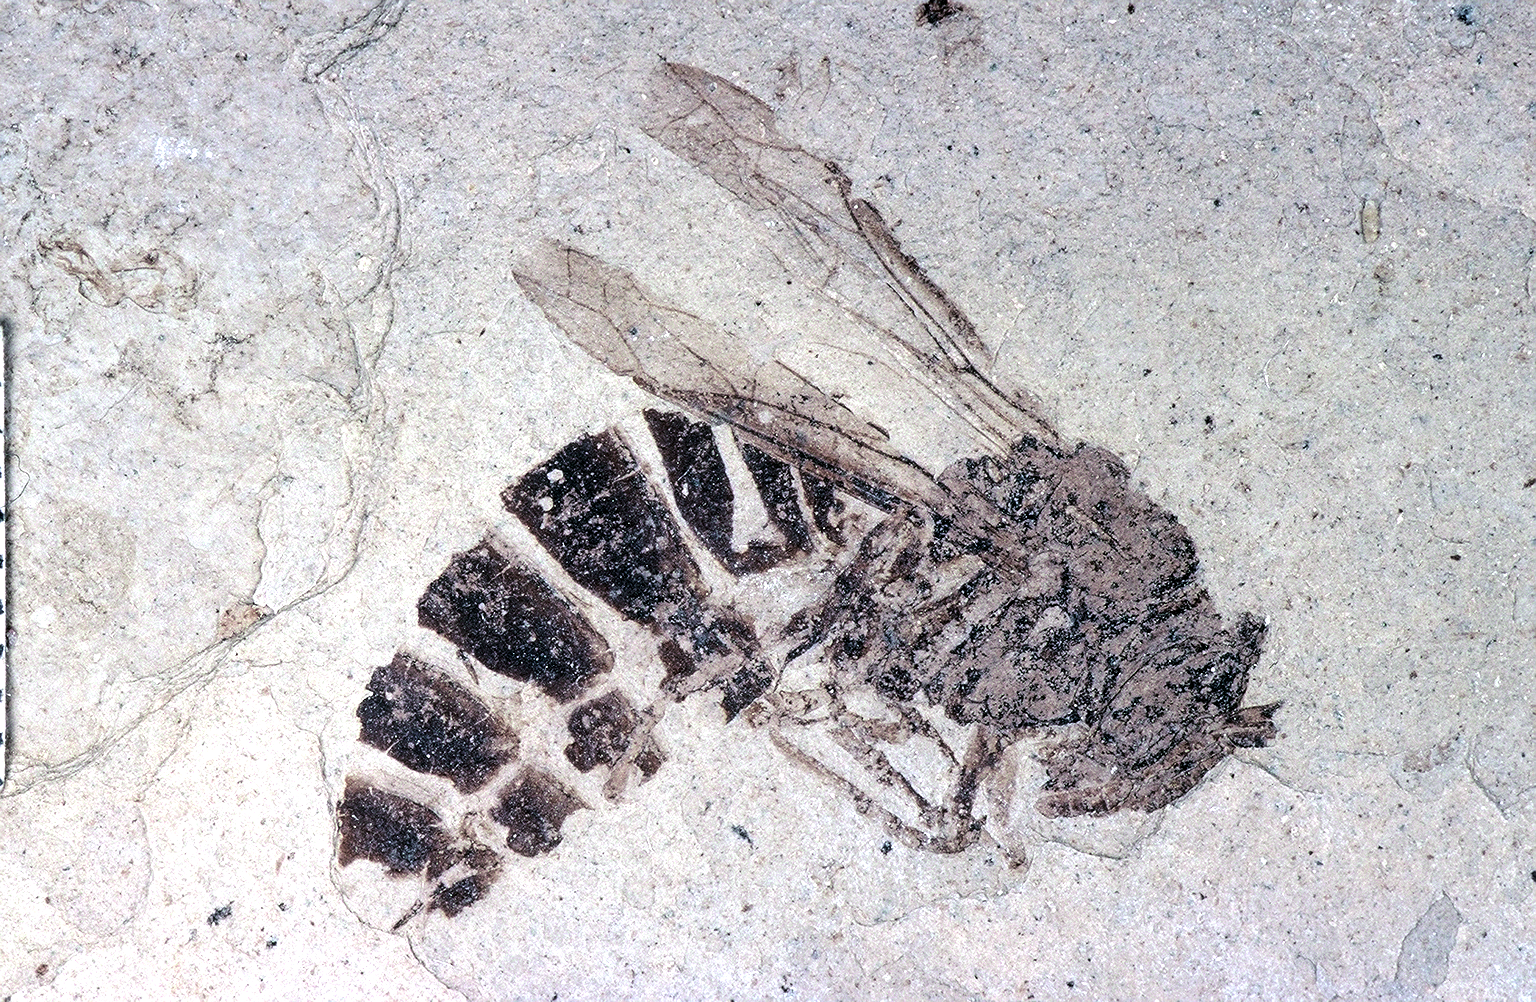 palaeovespa, ancient wasp